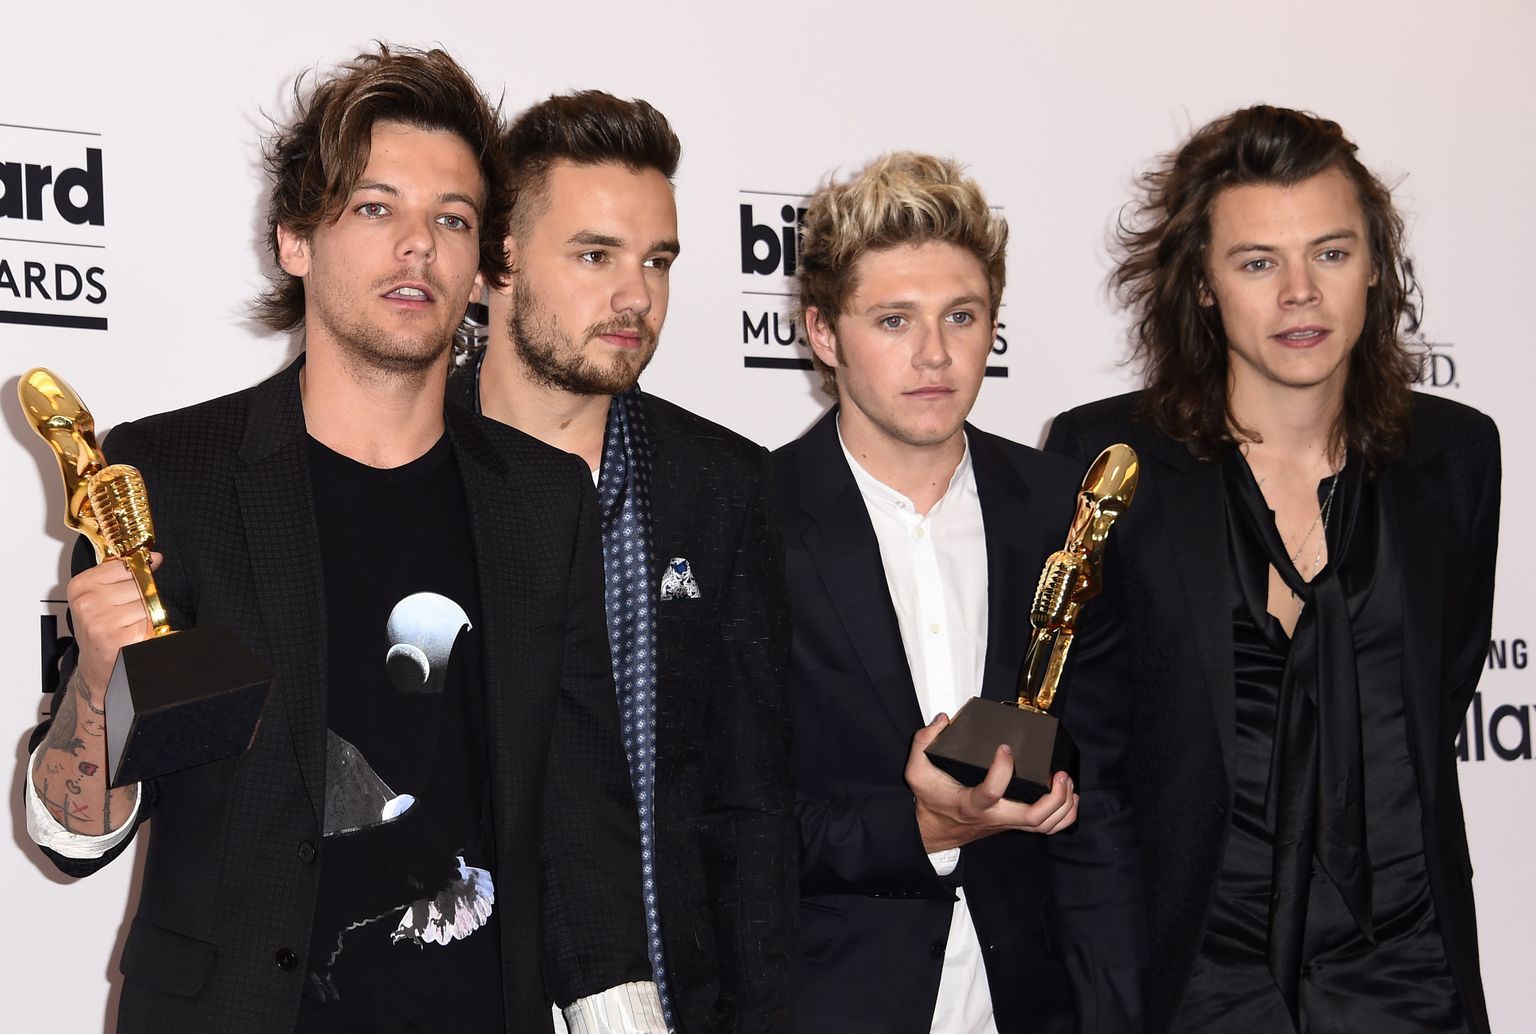 Briti-Iiri poistebänd One Direction 2015 Las Vegases Billboard Music Awards auhinnagalal. Vasakult: Louis Tomlinson, Liam Payne, Niall Horan ja Harry Styles. Puudub Zayn Malik, kes selleks ajaks oli bändist lahkunud